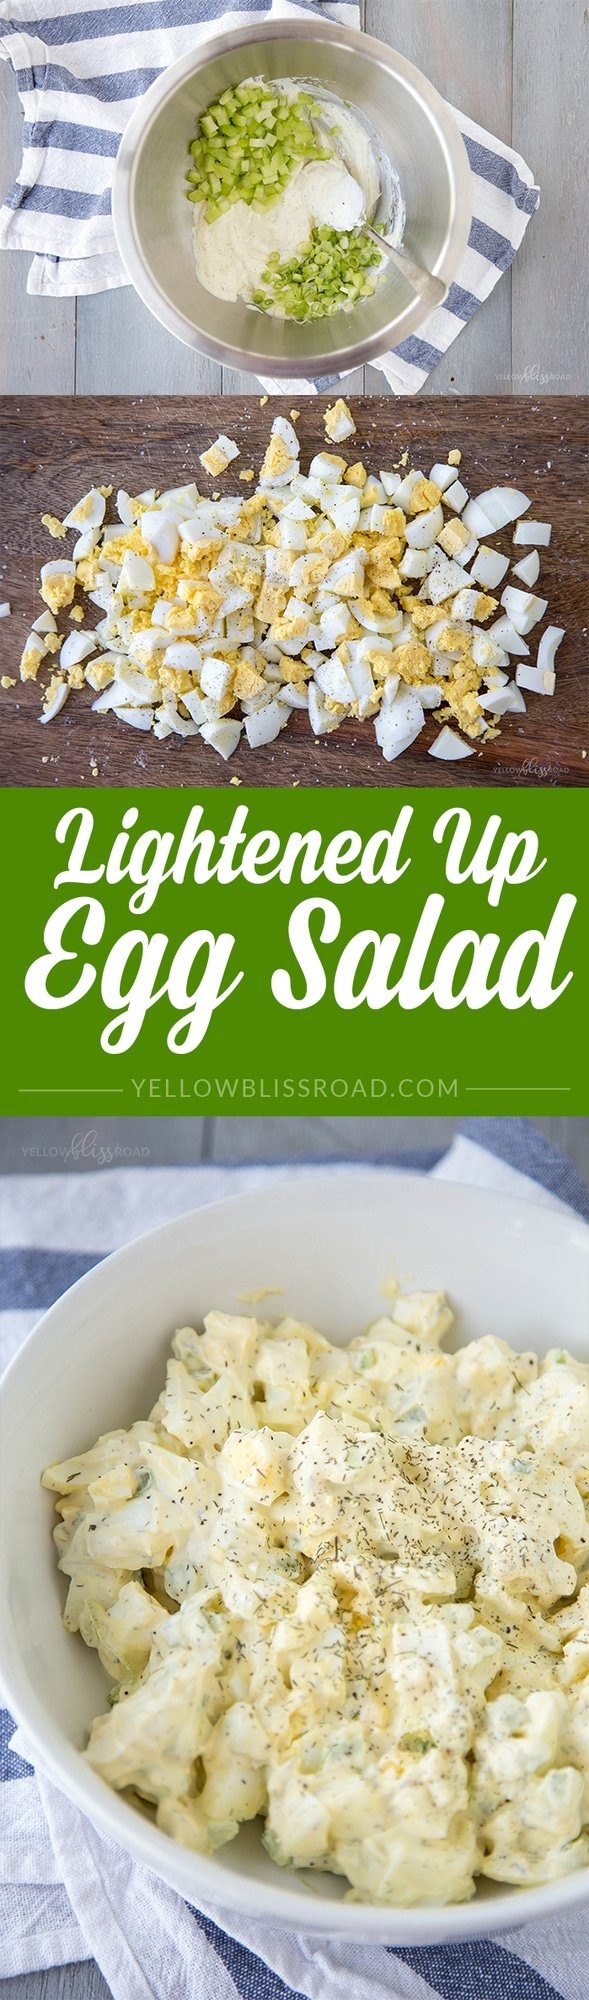 Lightened Up Egg Salad